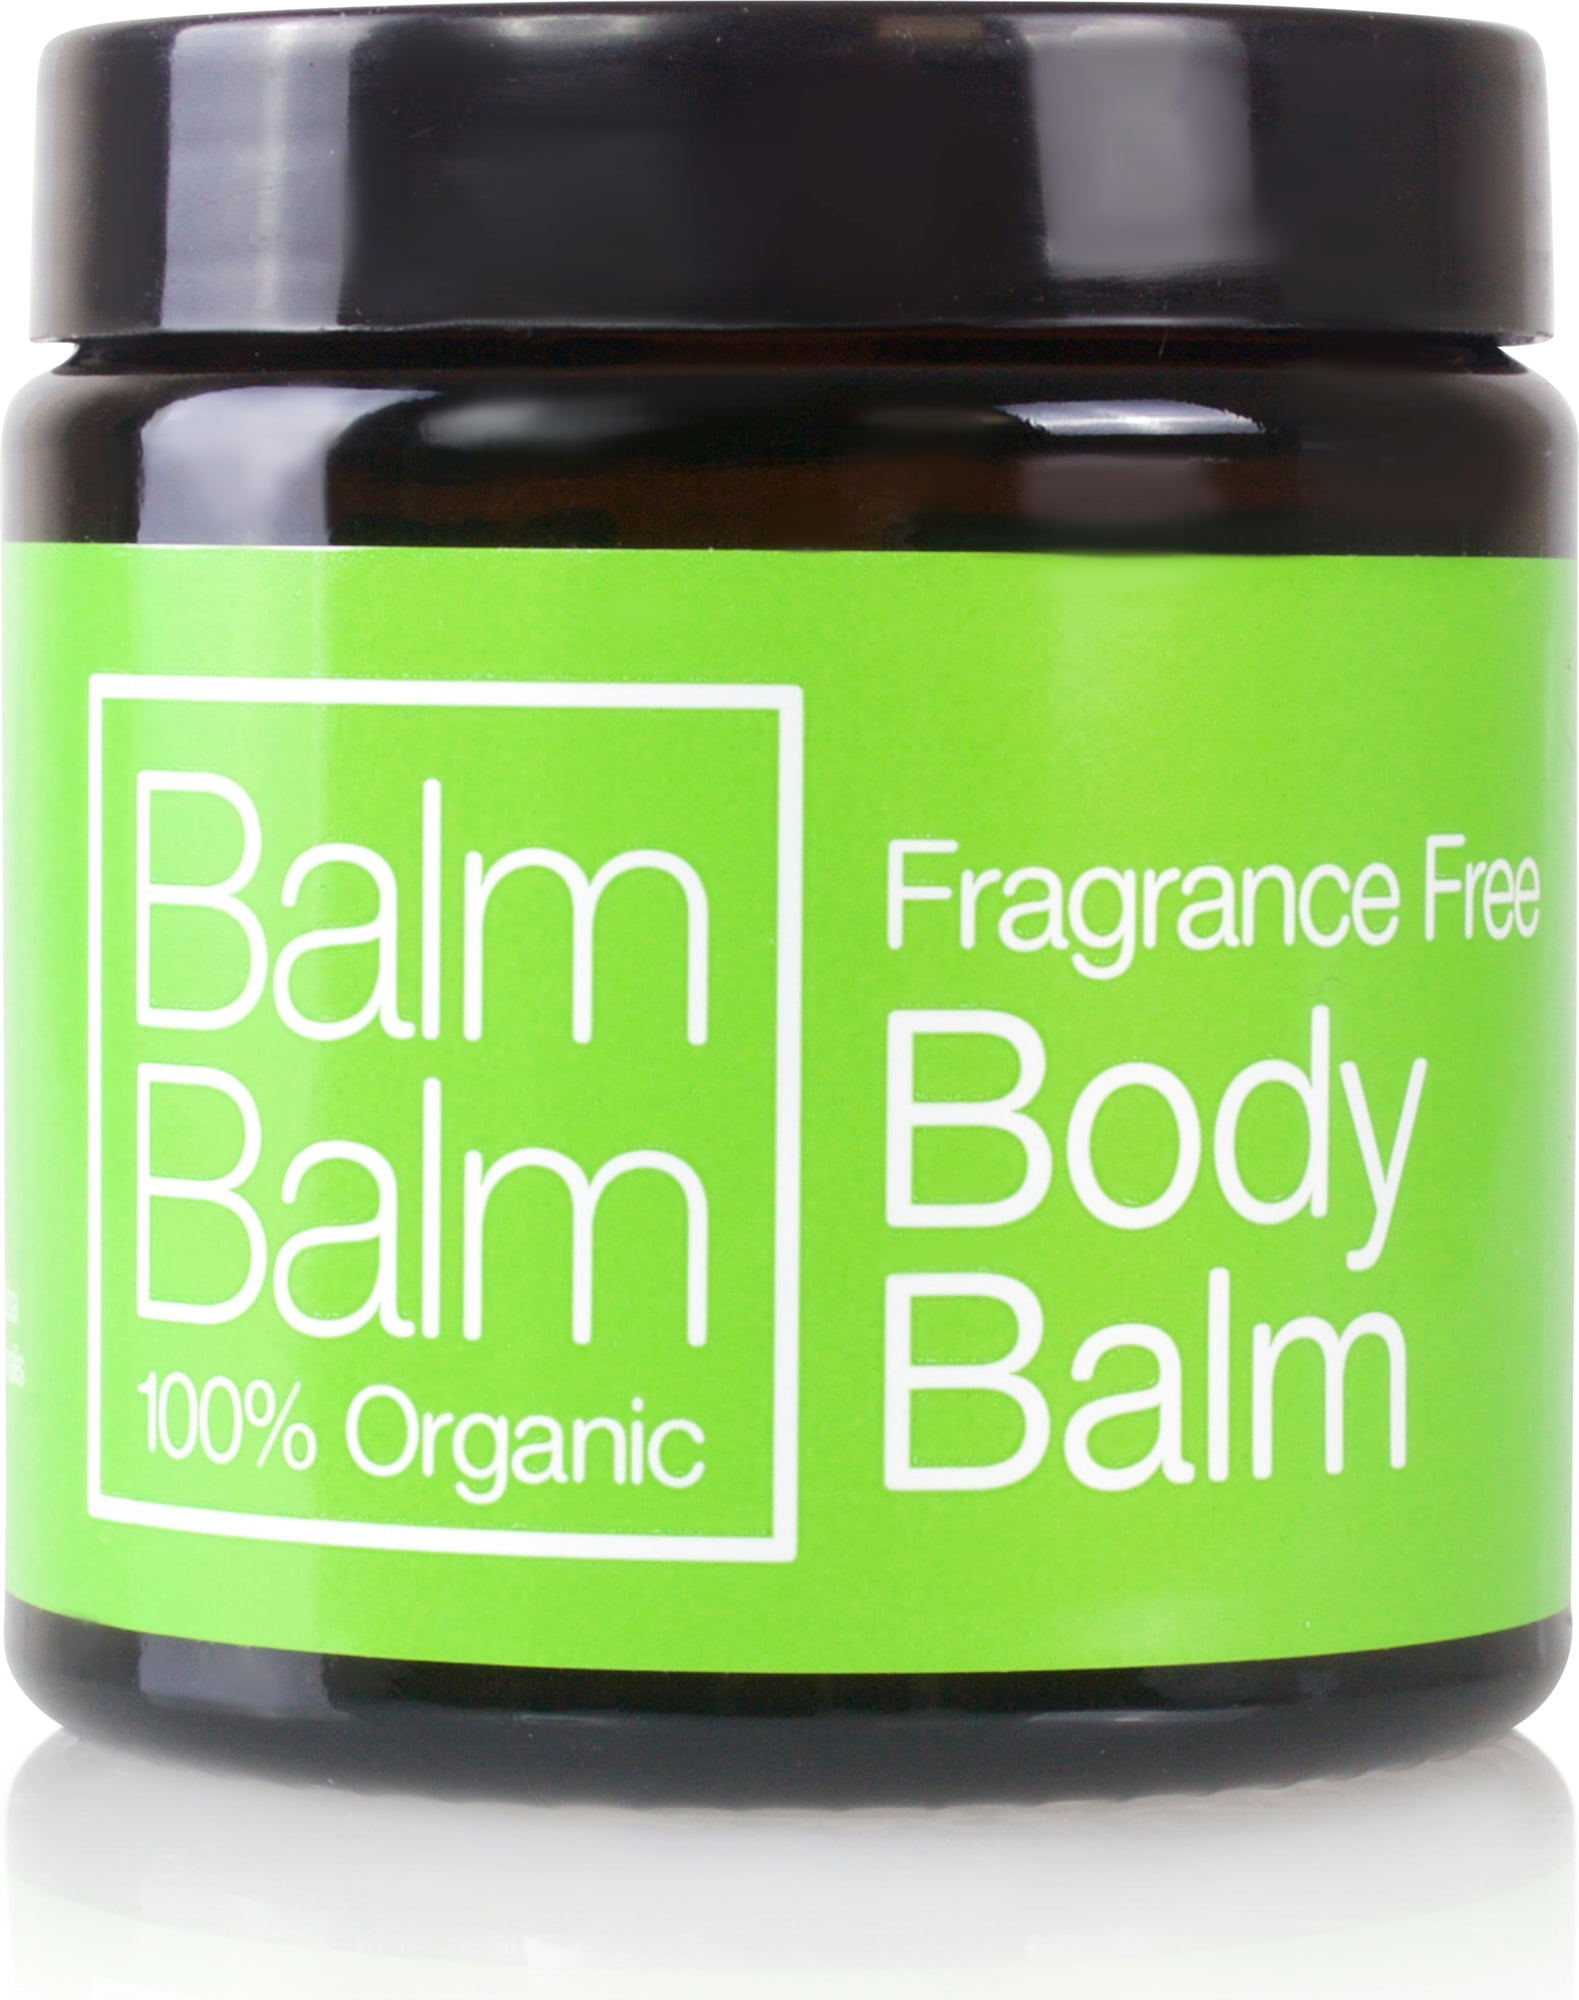 BalmBalm Fragrance Free Body Balm